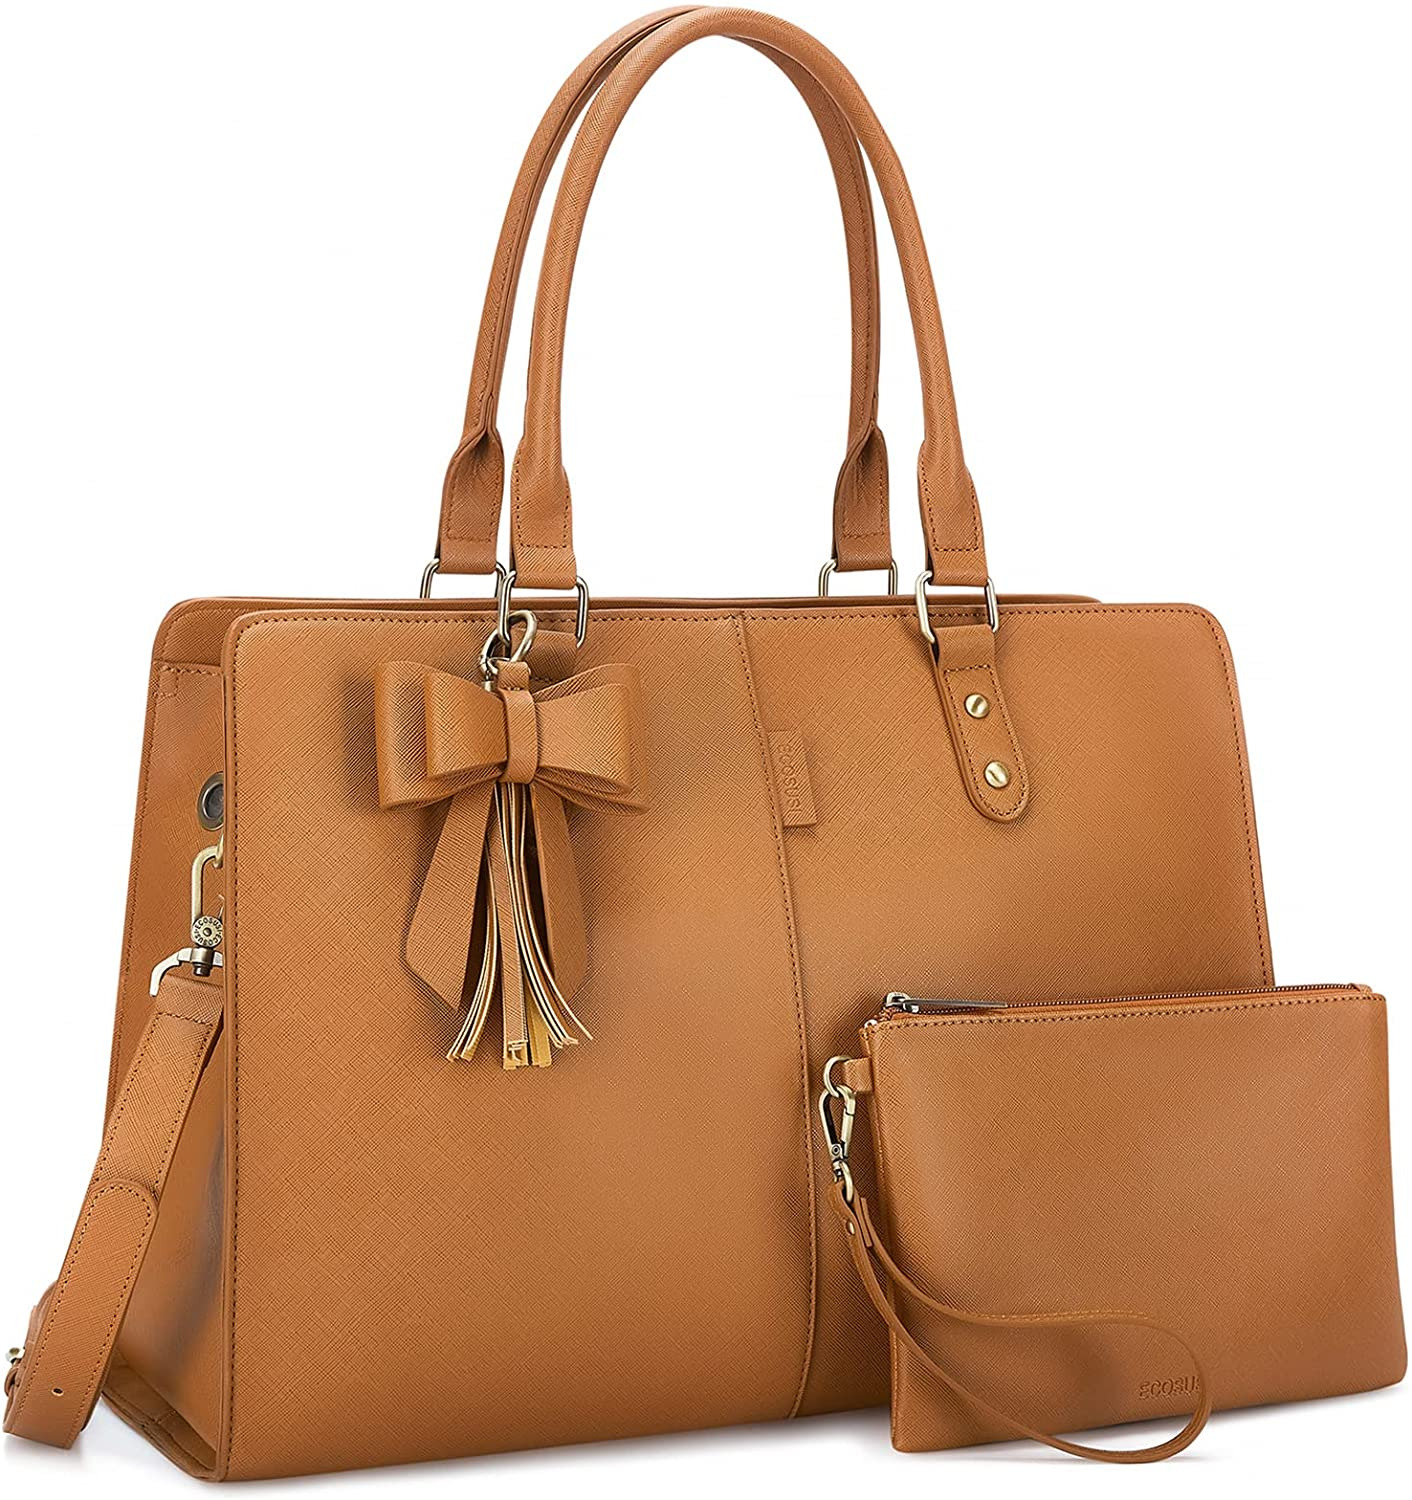 15.6 Inch Luxury Laptop Tote Shoulder Bag Briefcase Handbag Travel Office School